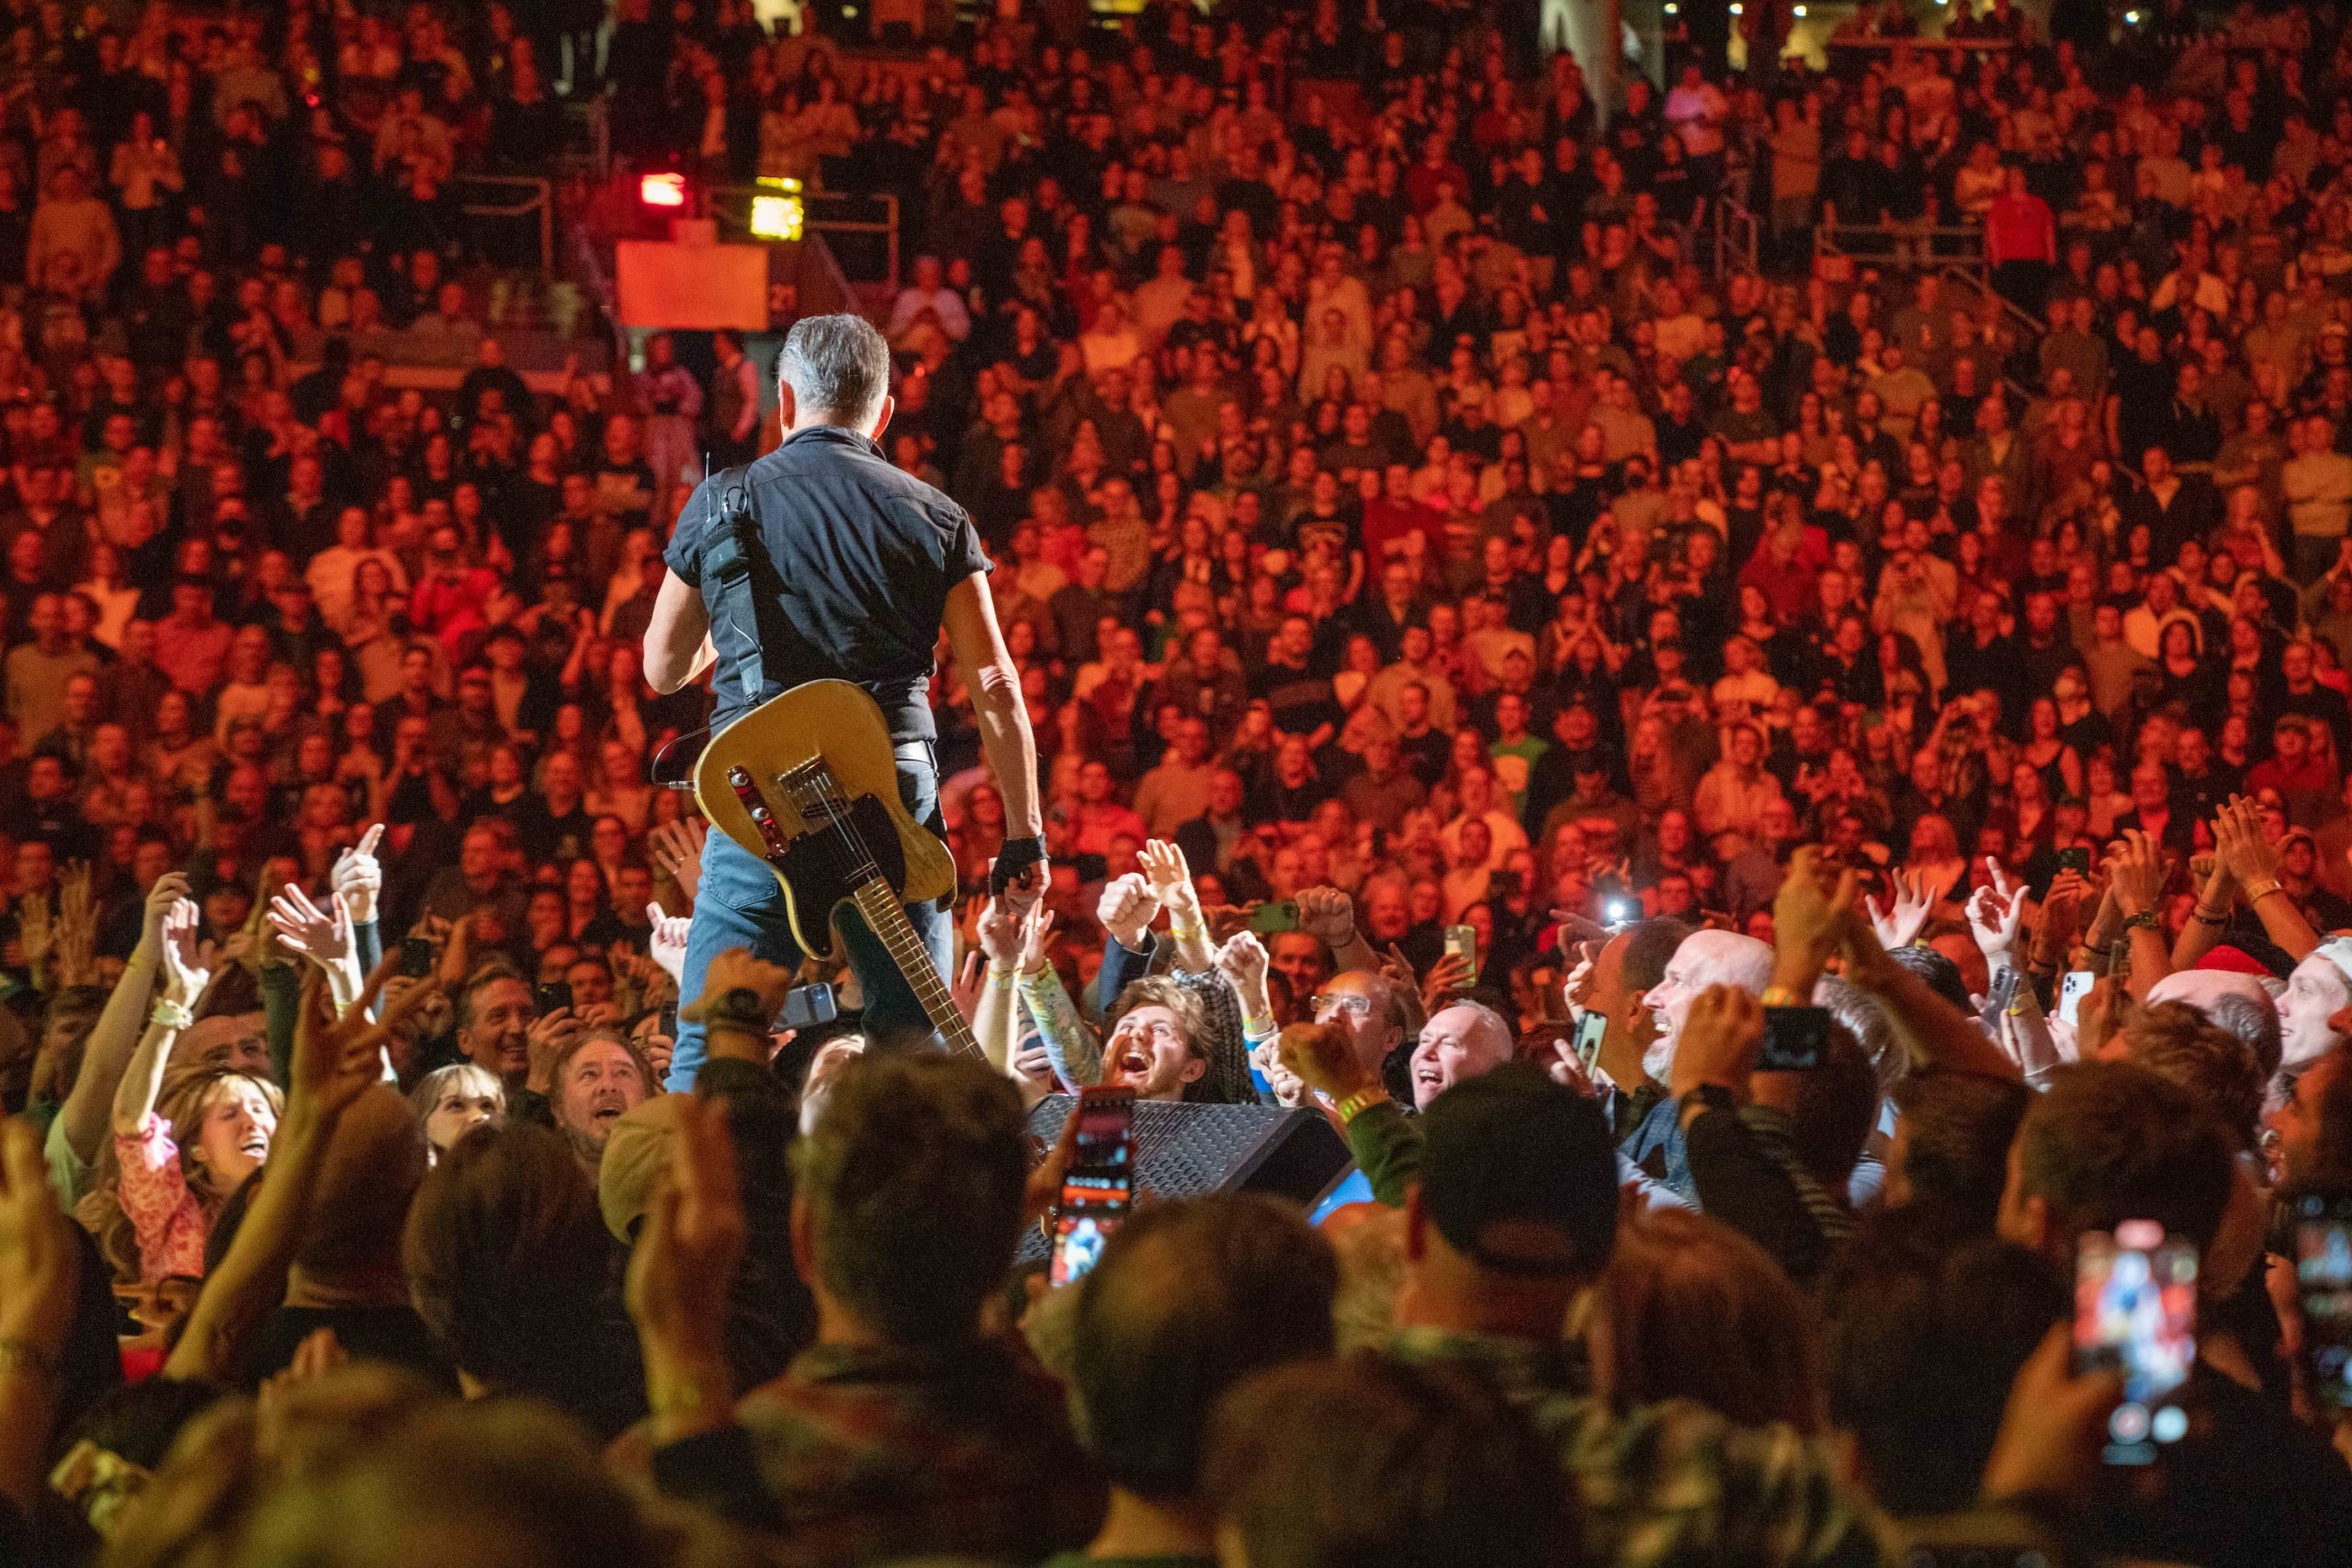 Bruce Springsteen & E Street Band at TD Garden, Boston, Massachusetts on March 20, 2023.